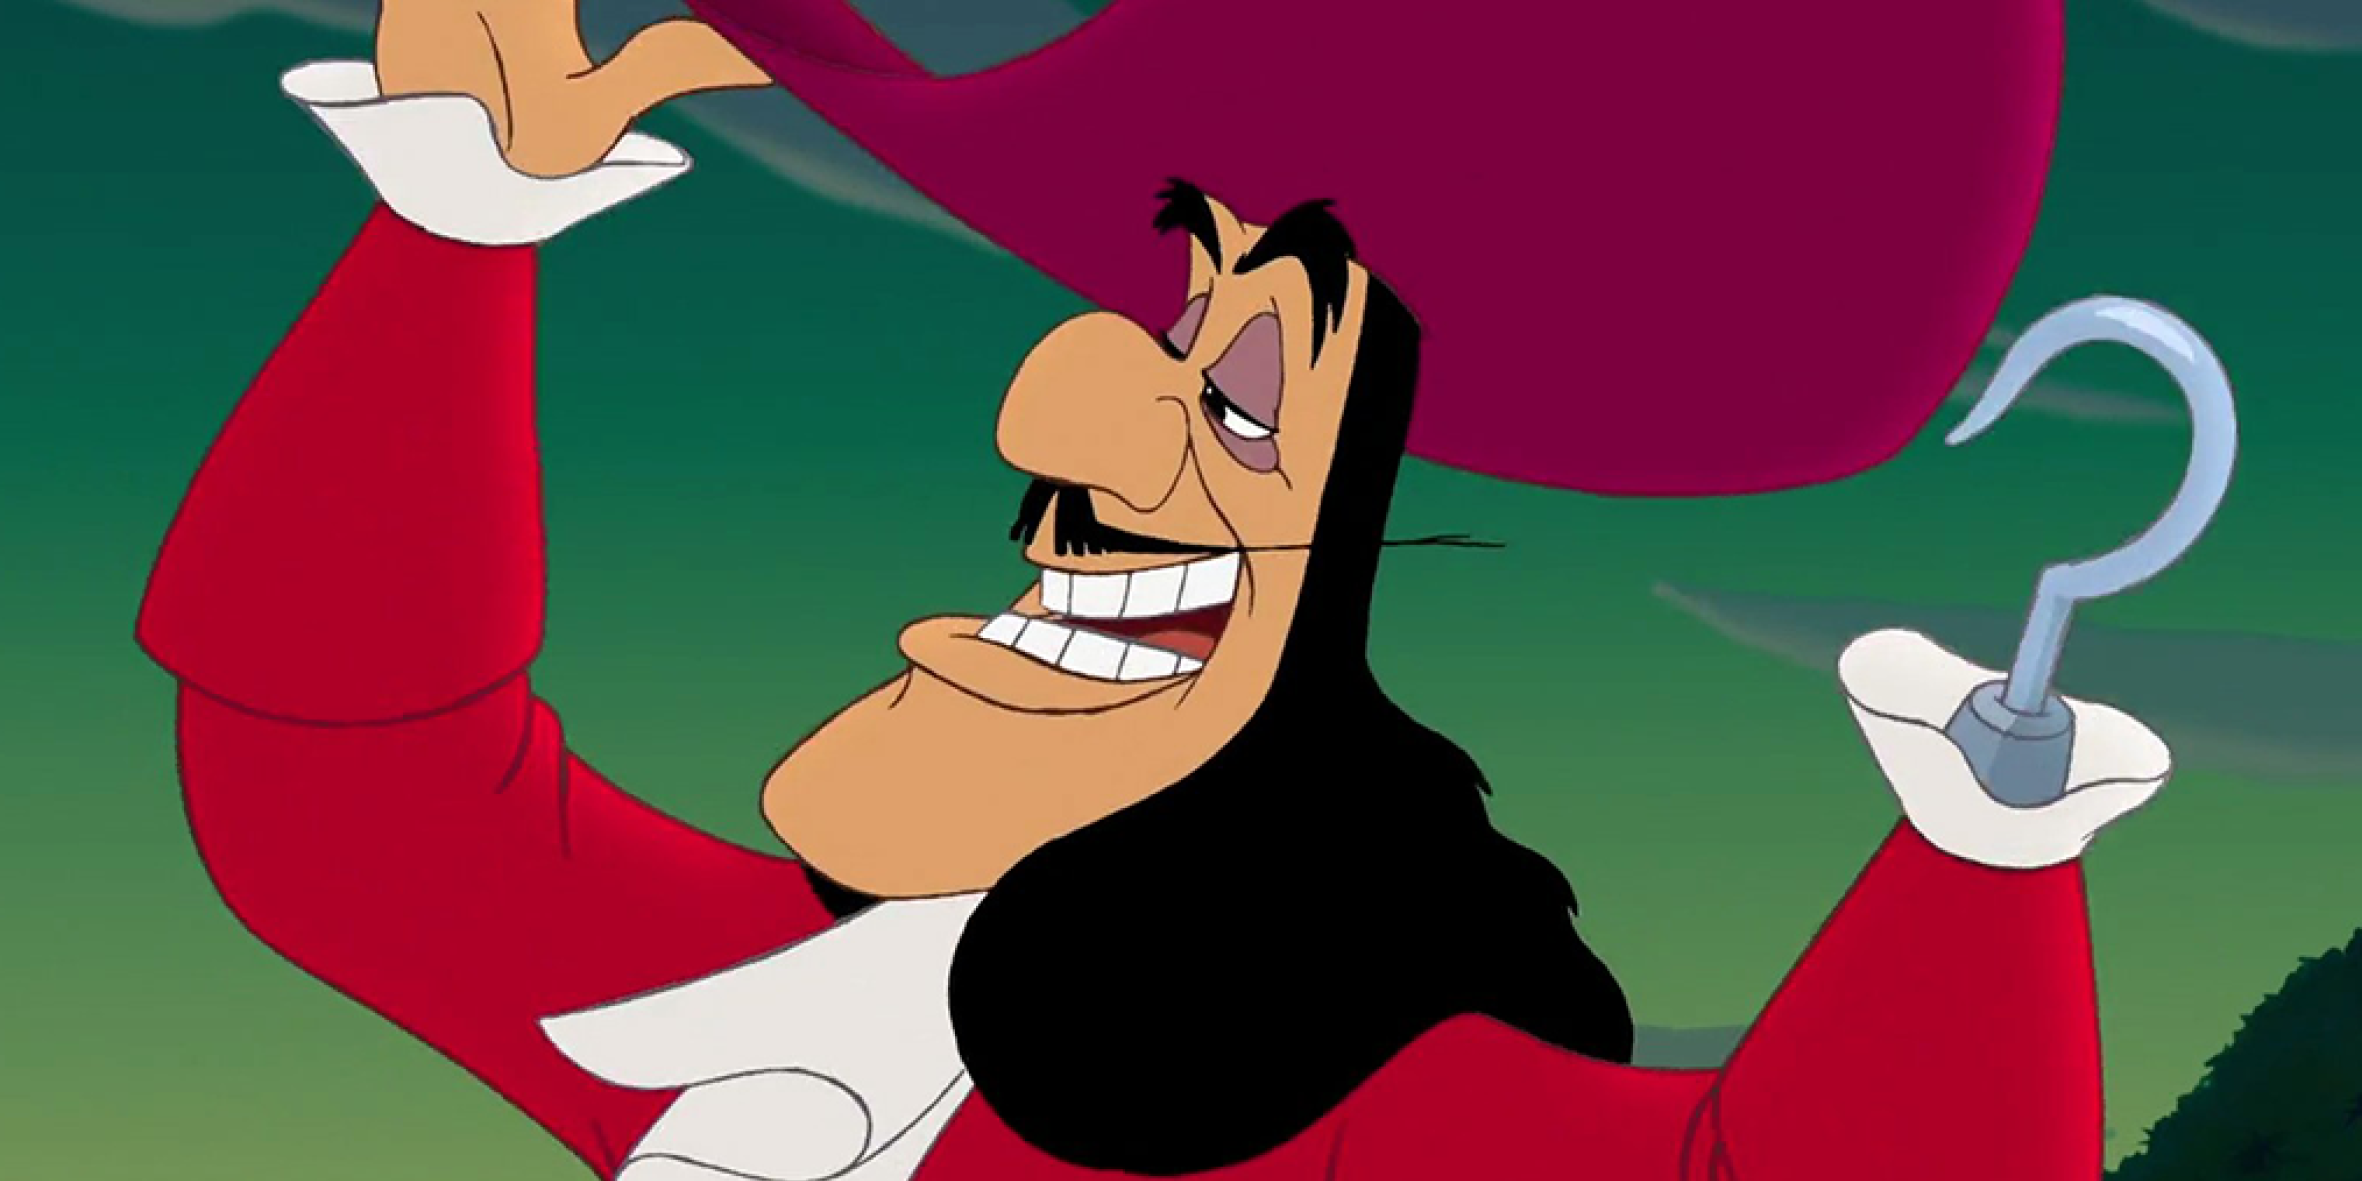 Imagem. Frame de animação "Peter Pan", exibindo o Capitão Gancho. O personagem traja roupas de navegação na cor vermelha, com babados branco na altura do perto e pulsos. Possui queixo alongado e um gancho no local da mão esquerda. Fim da descrição.